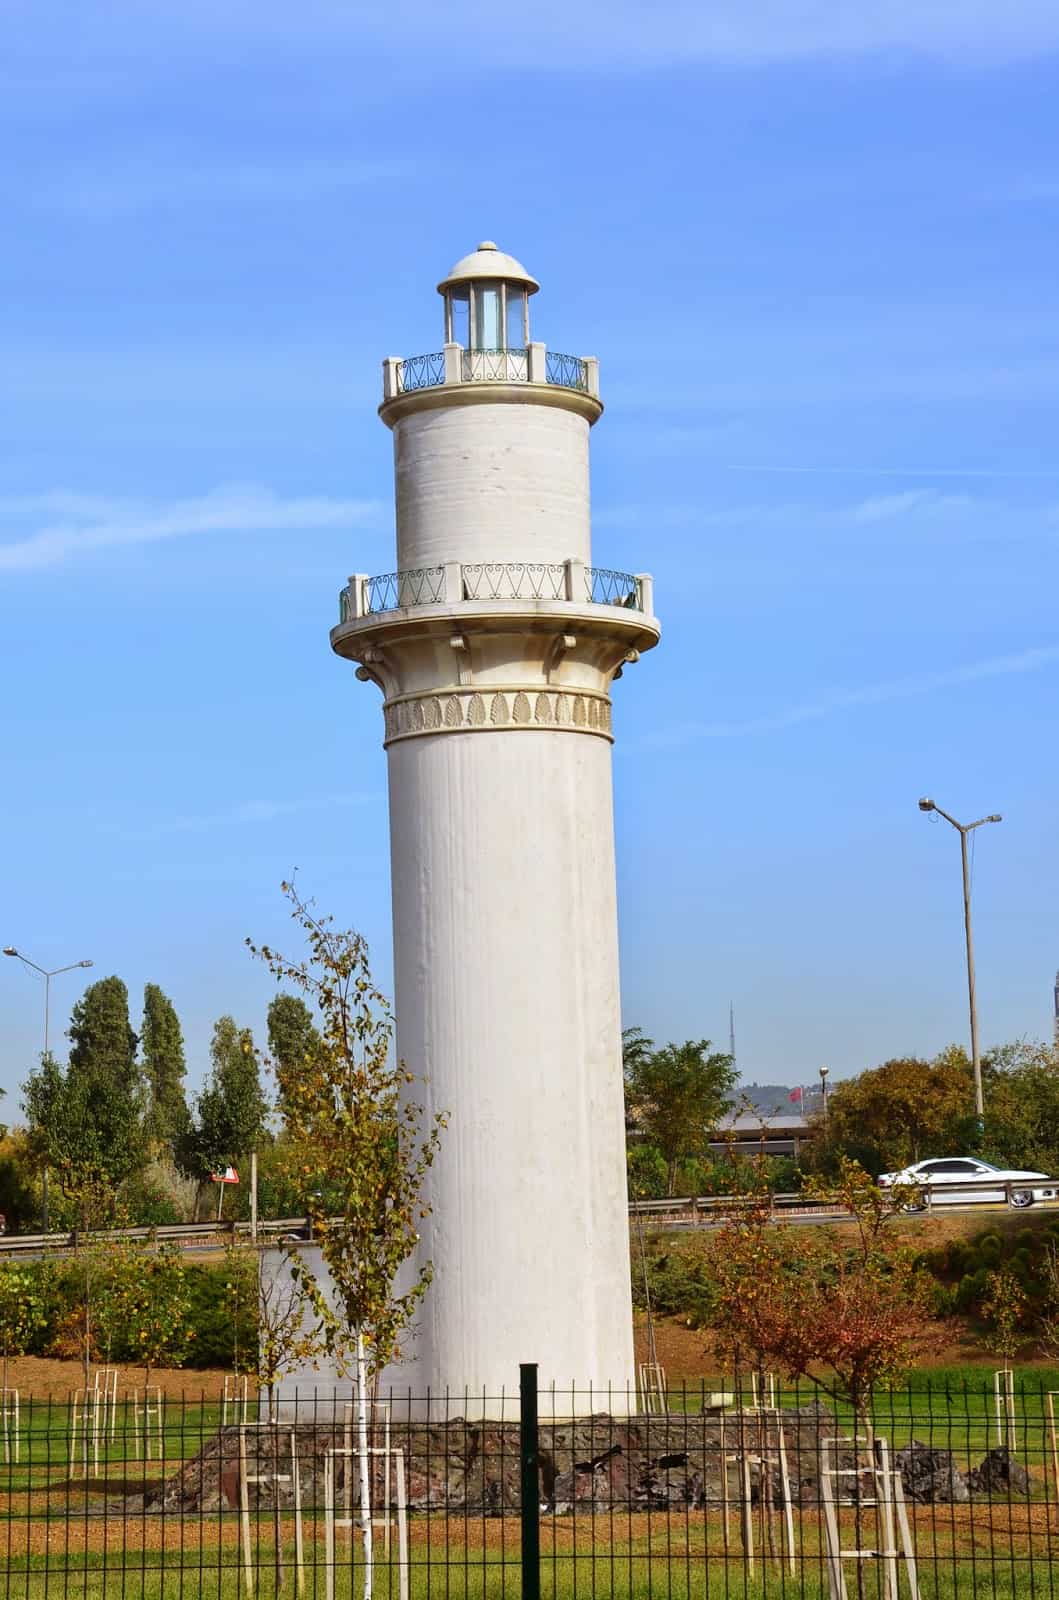 Lighthouse at Şükrü Saracoğlu Stadium in Kadıköy, Istanbul, Turkey